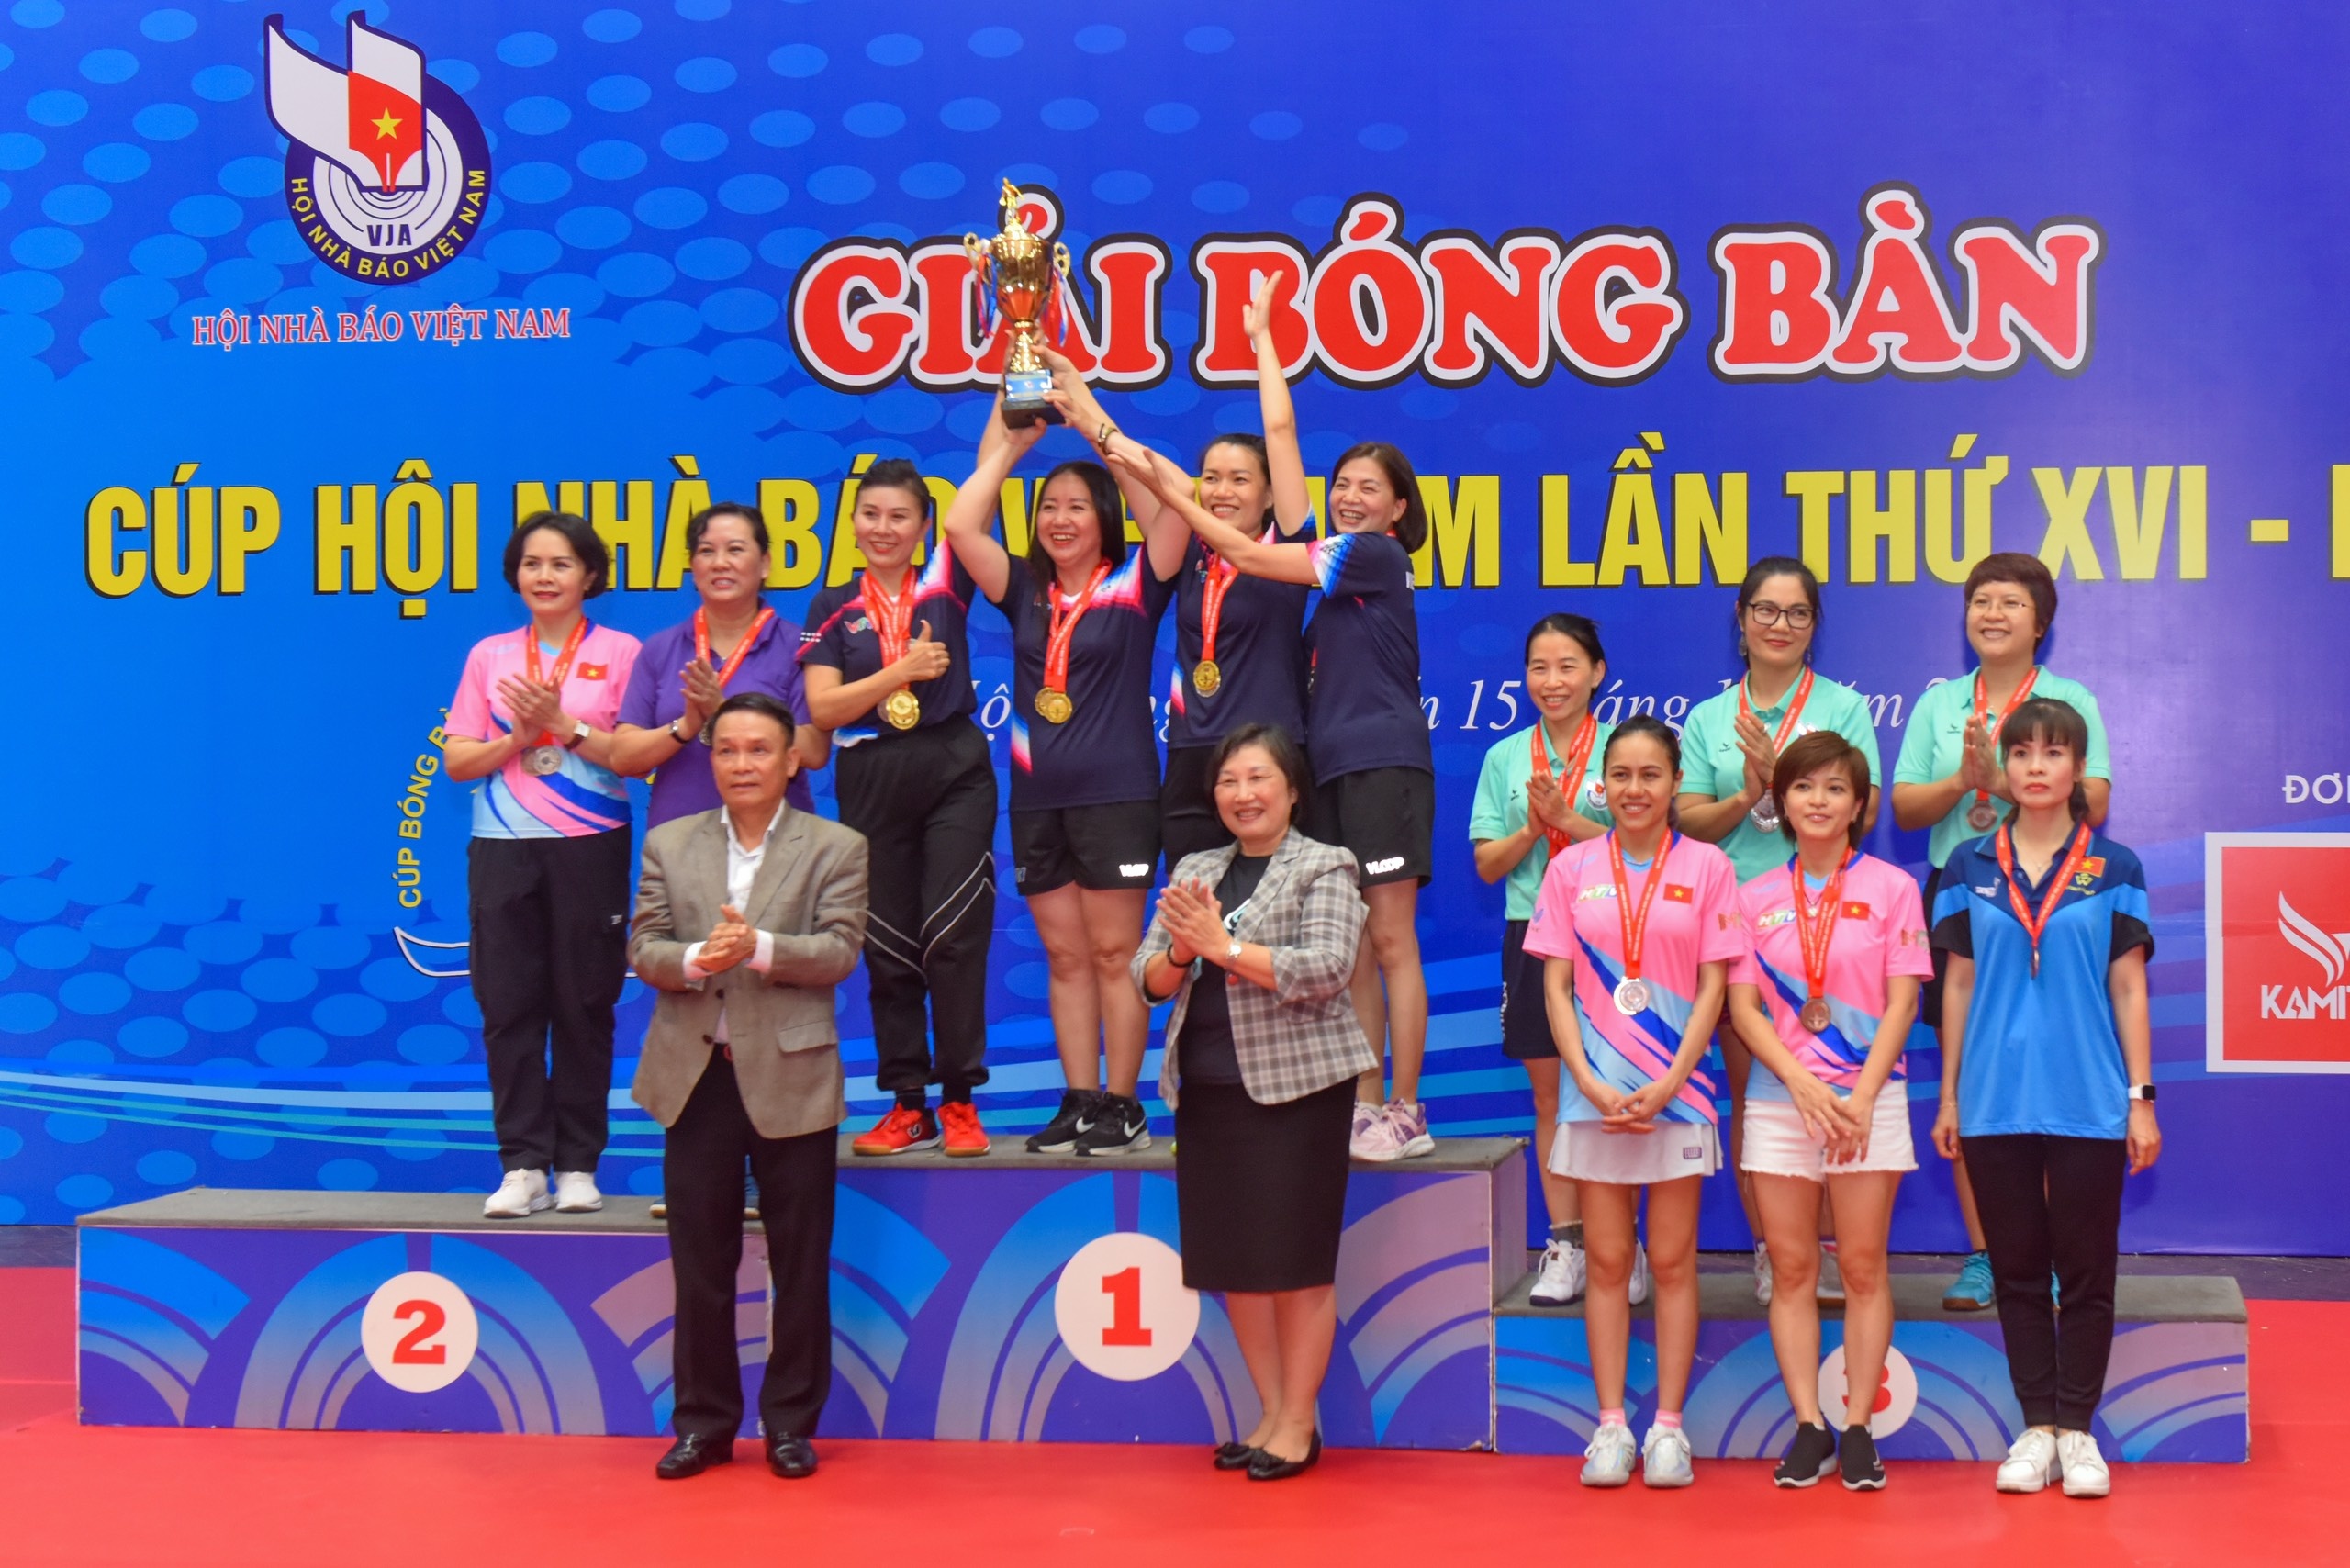 Giải bóng bàn Cúp Hội Nhà báo Việt Nam năm 2023: Chuyên nghiệp và đầy cảm xúc